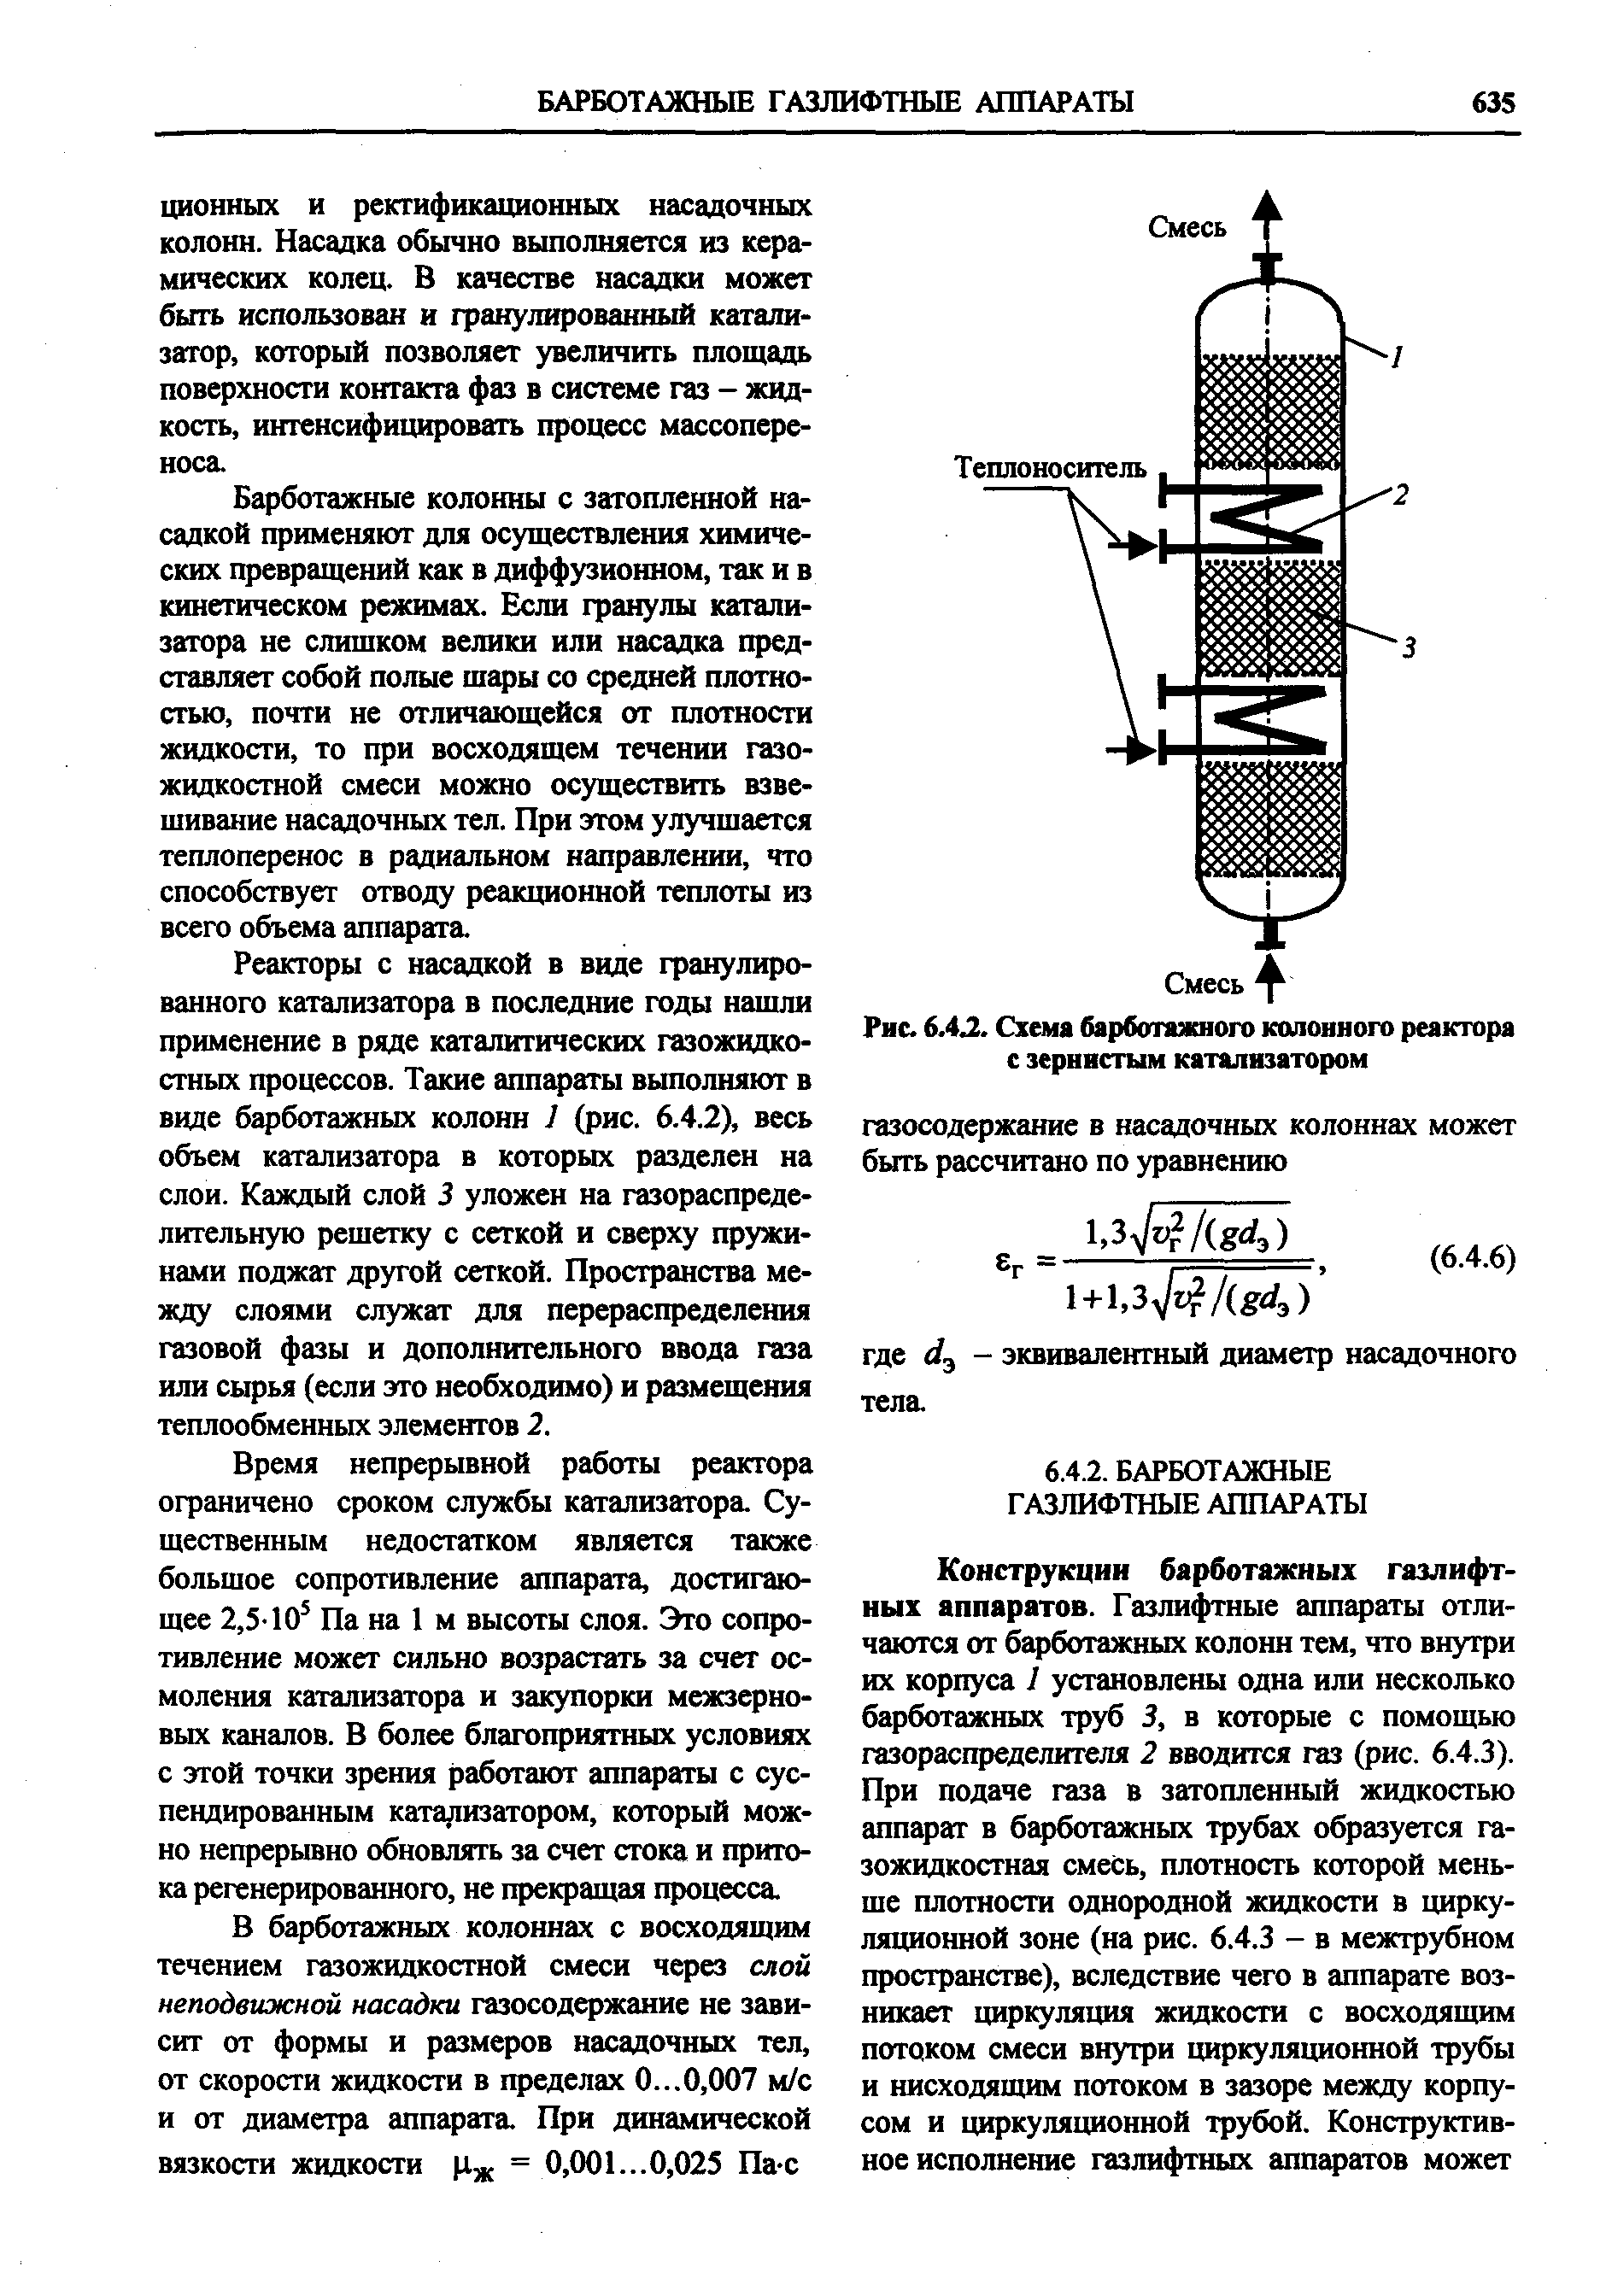 Рис. 6.4Л. Схема барботажного колонного реактора с зернистым катализатором
